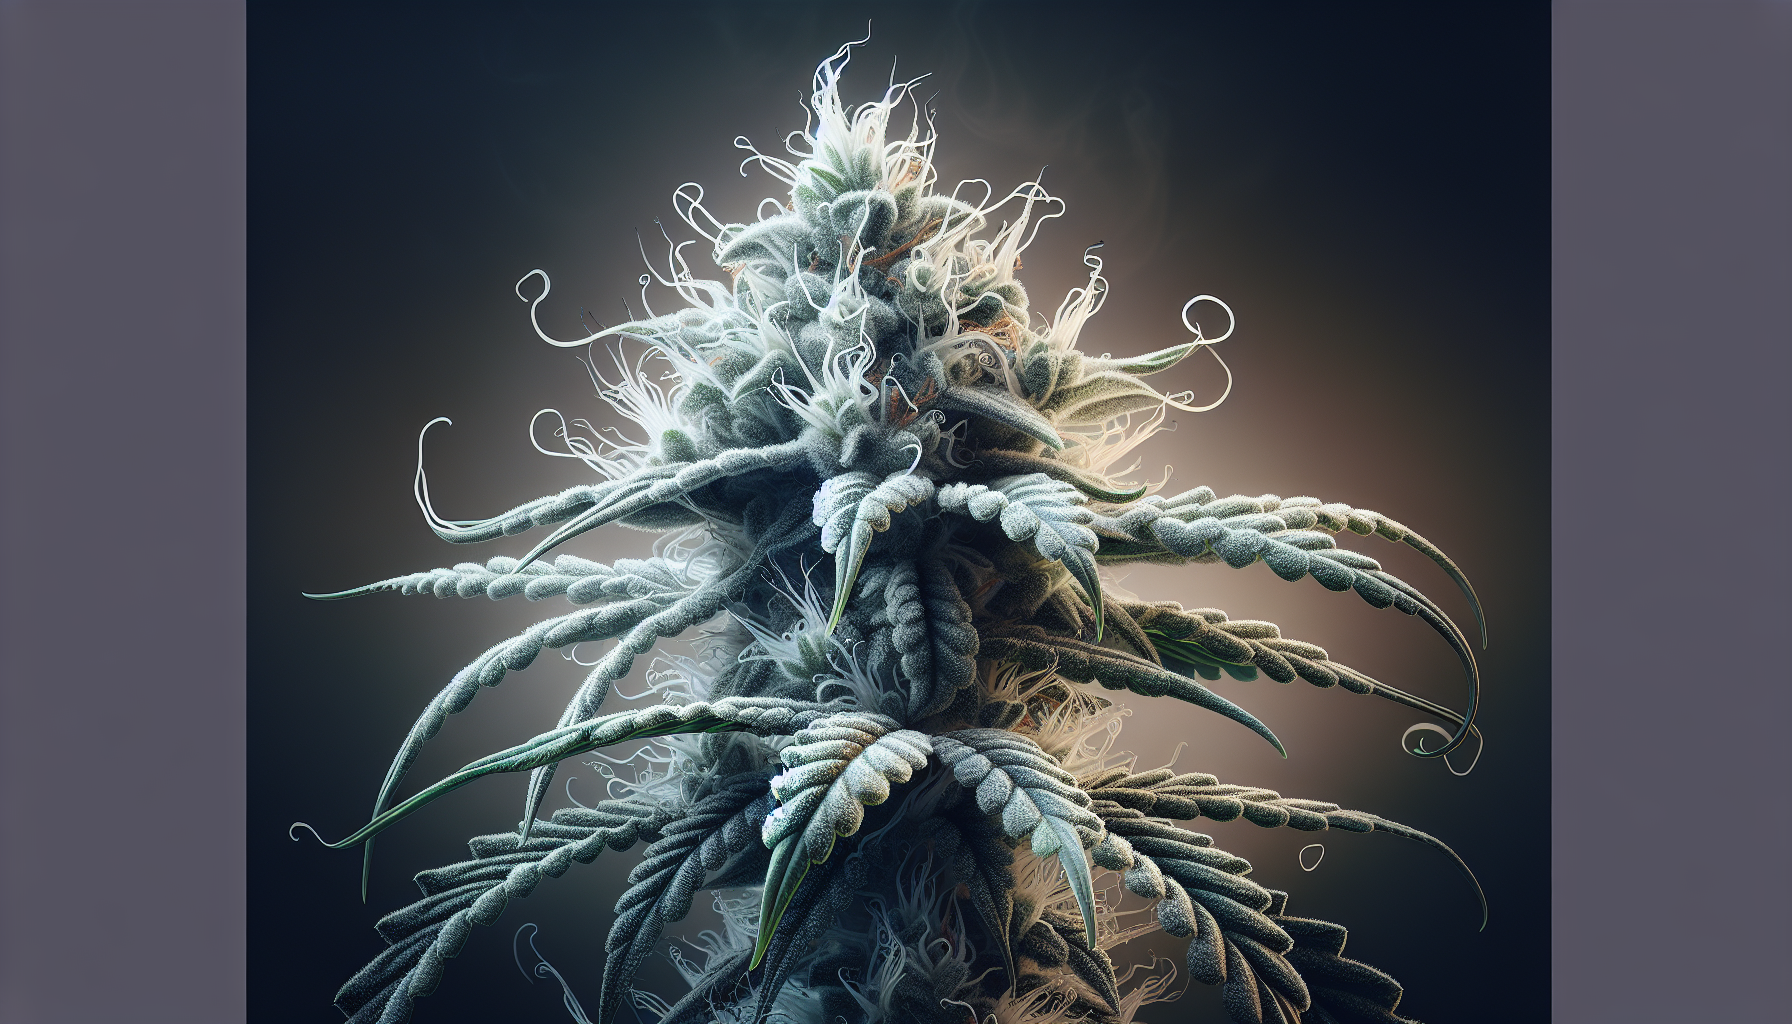 Eine künstlerische Darstellung der CBD Blüte "White Widow" mit hoher Potenz